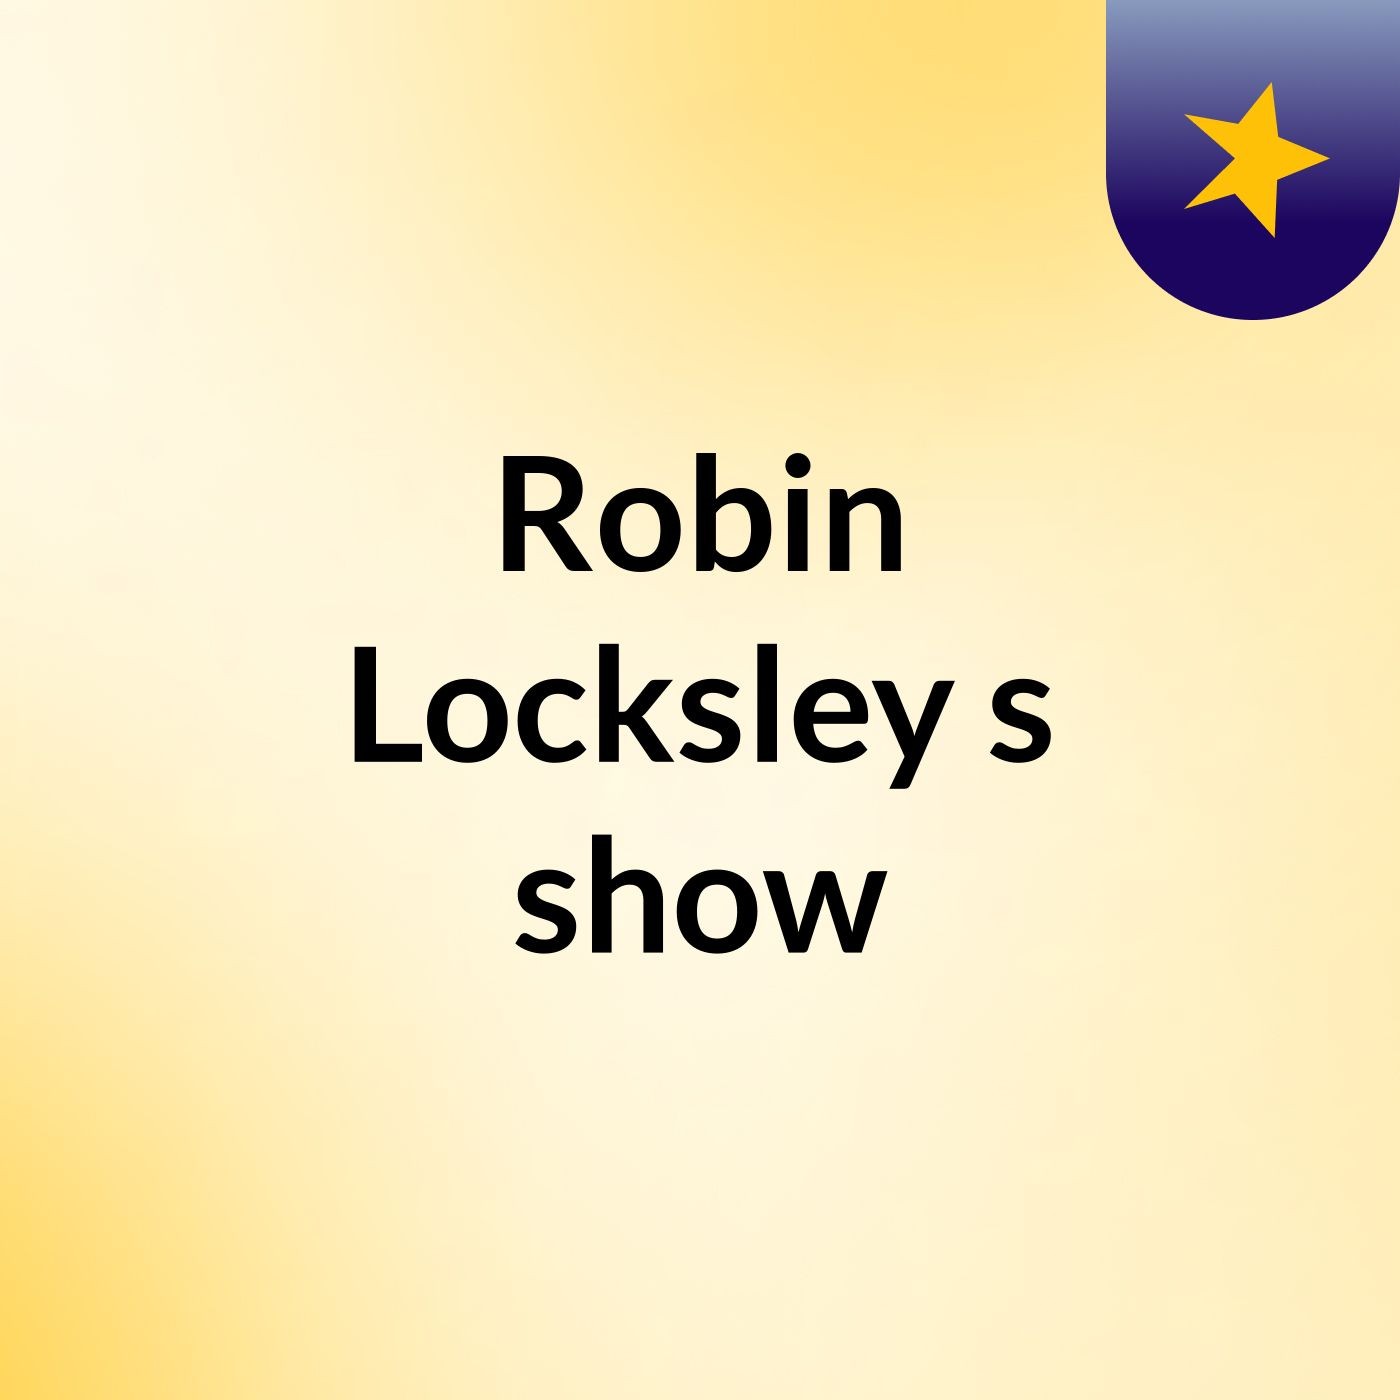 Robin Locksley's show